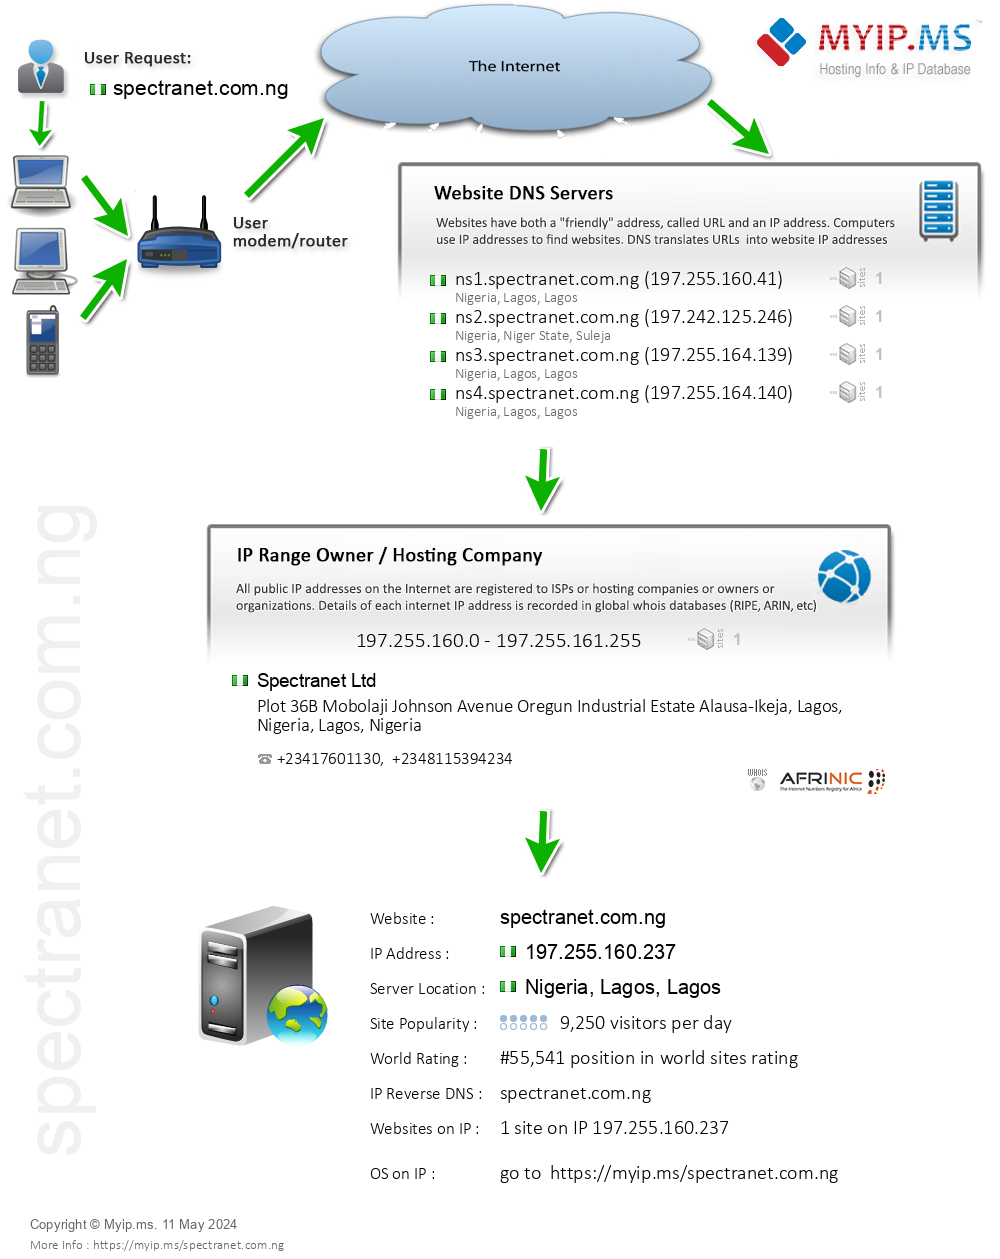 Spectranet.com.ng - Website Hosting Visual IP Diagram